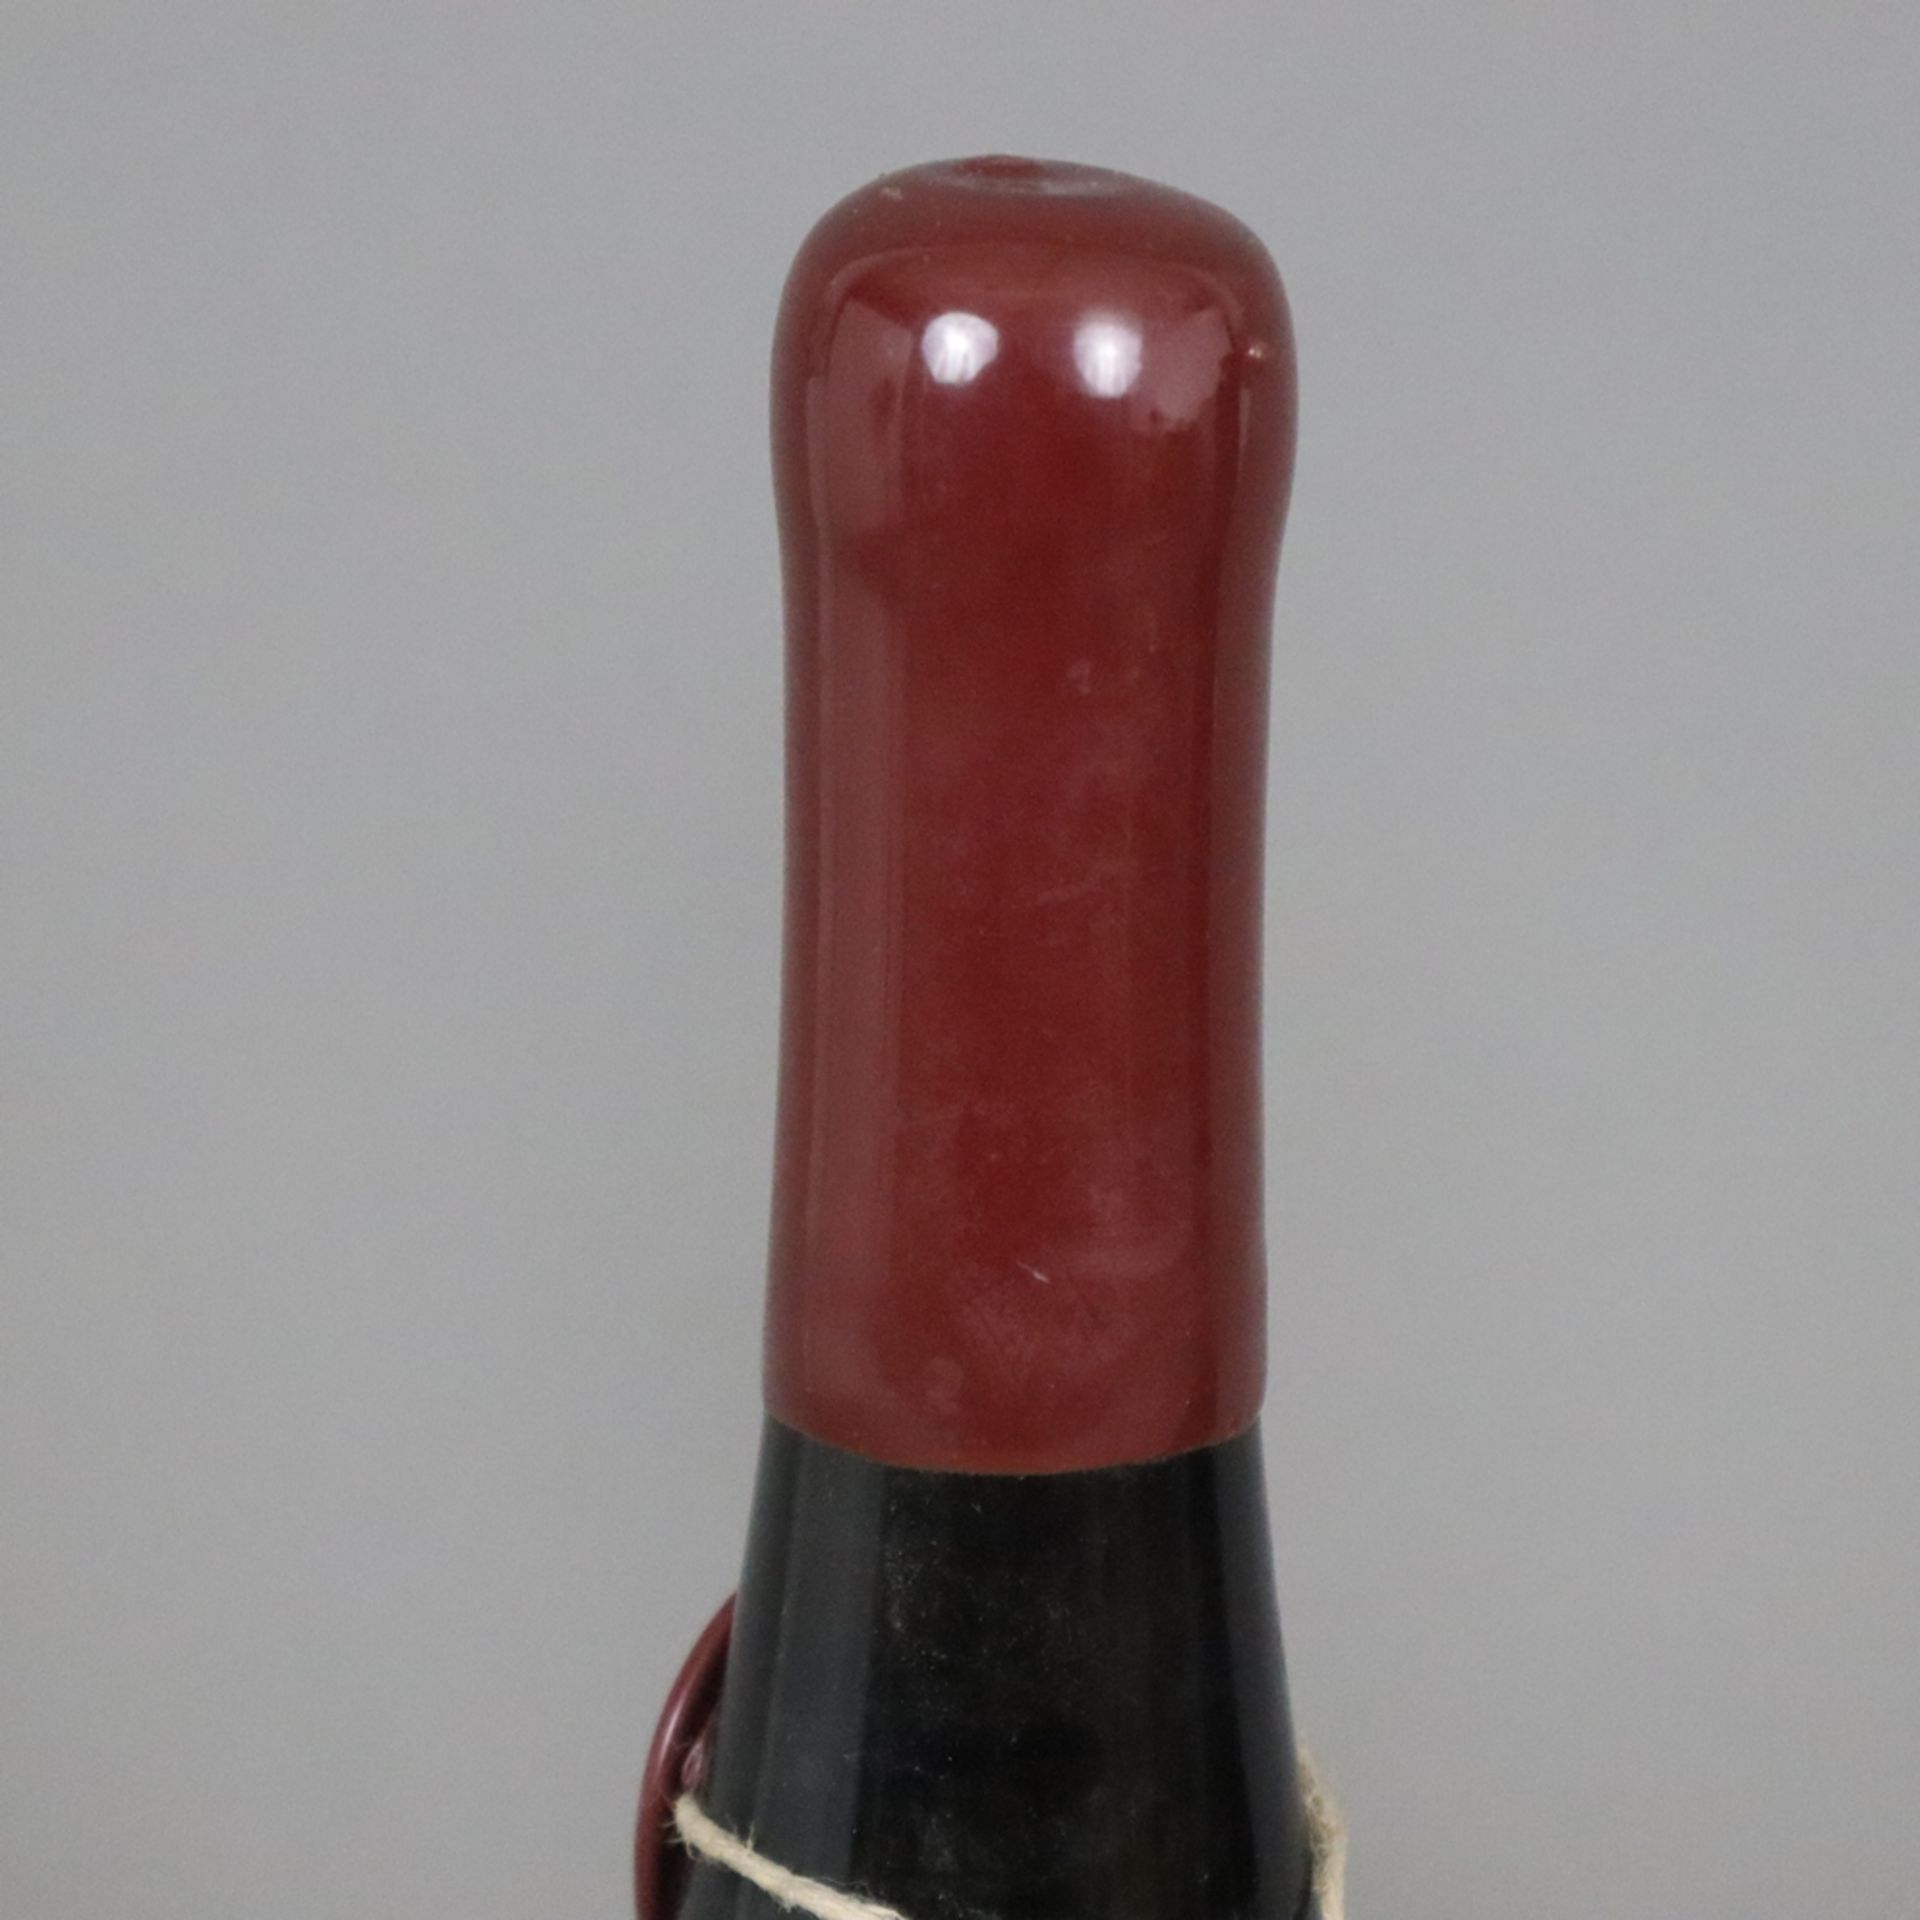 Wein - 2 Flaschen 2010 „RESSpekt“ Rheingau Riesling, je 0,75 l, Füllstand: High Fill, Flasche 537/7 - Bild 2 aus 6